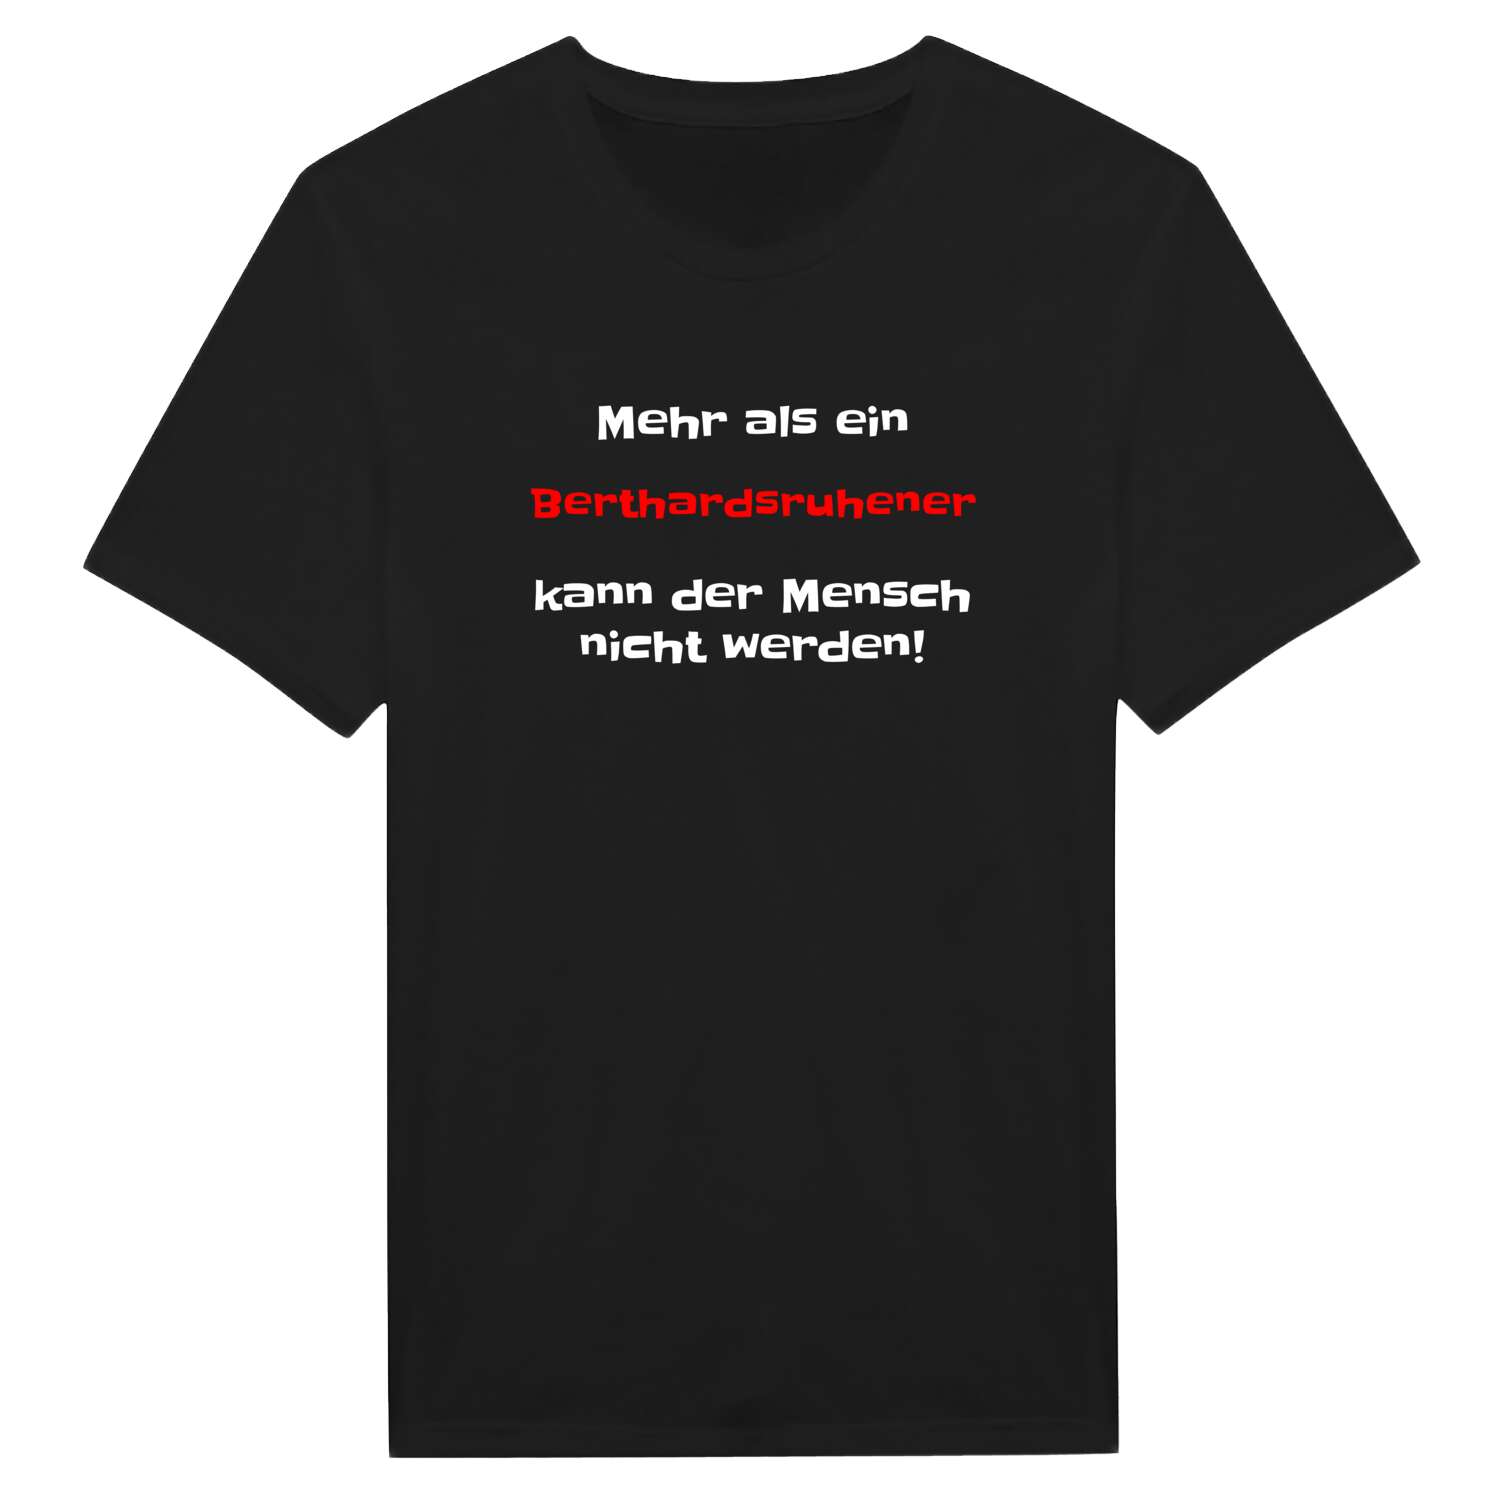 Berthardsruhe T-Shirt »Mehr als ein«